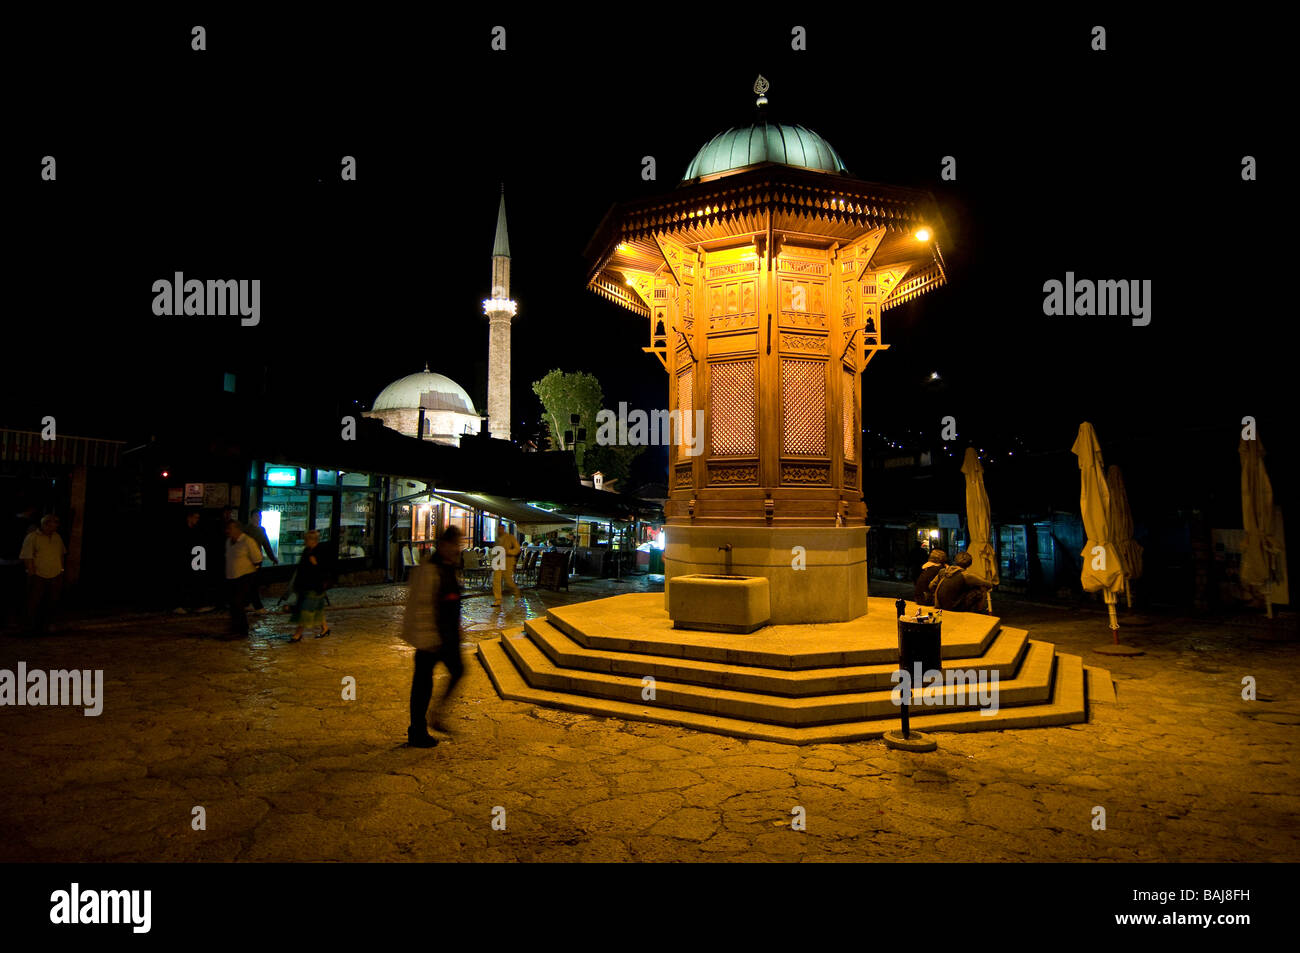 Photo de nuit de la zone piétonne avec fontaine Sarajevo Bosnie orientale Banque D'Images